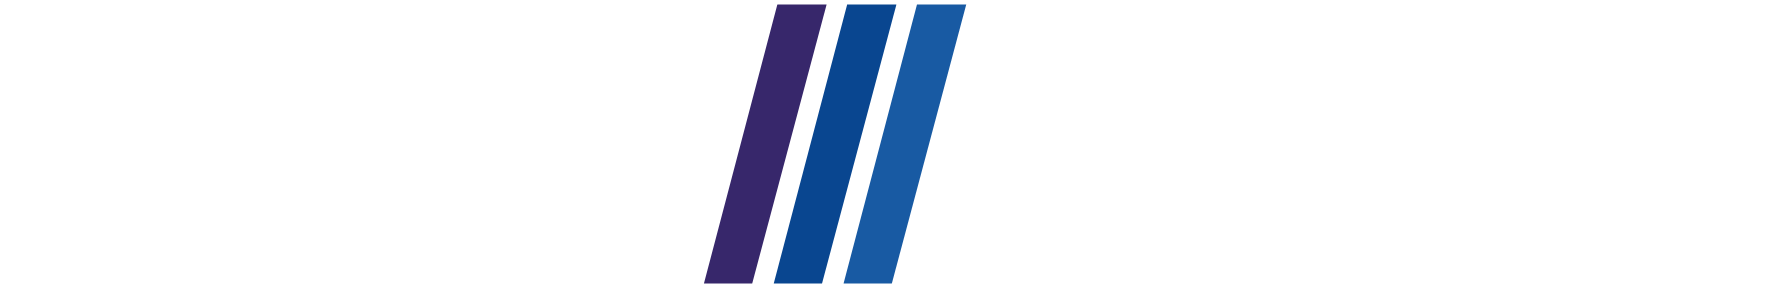 Логотип Энко для черного фона